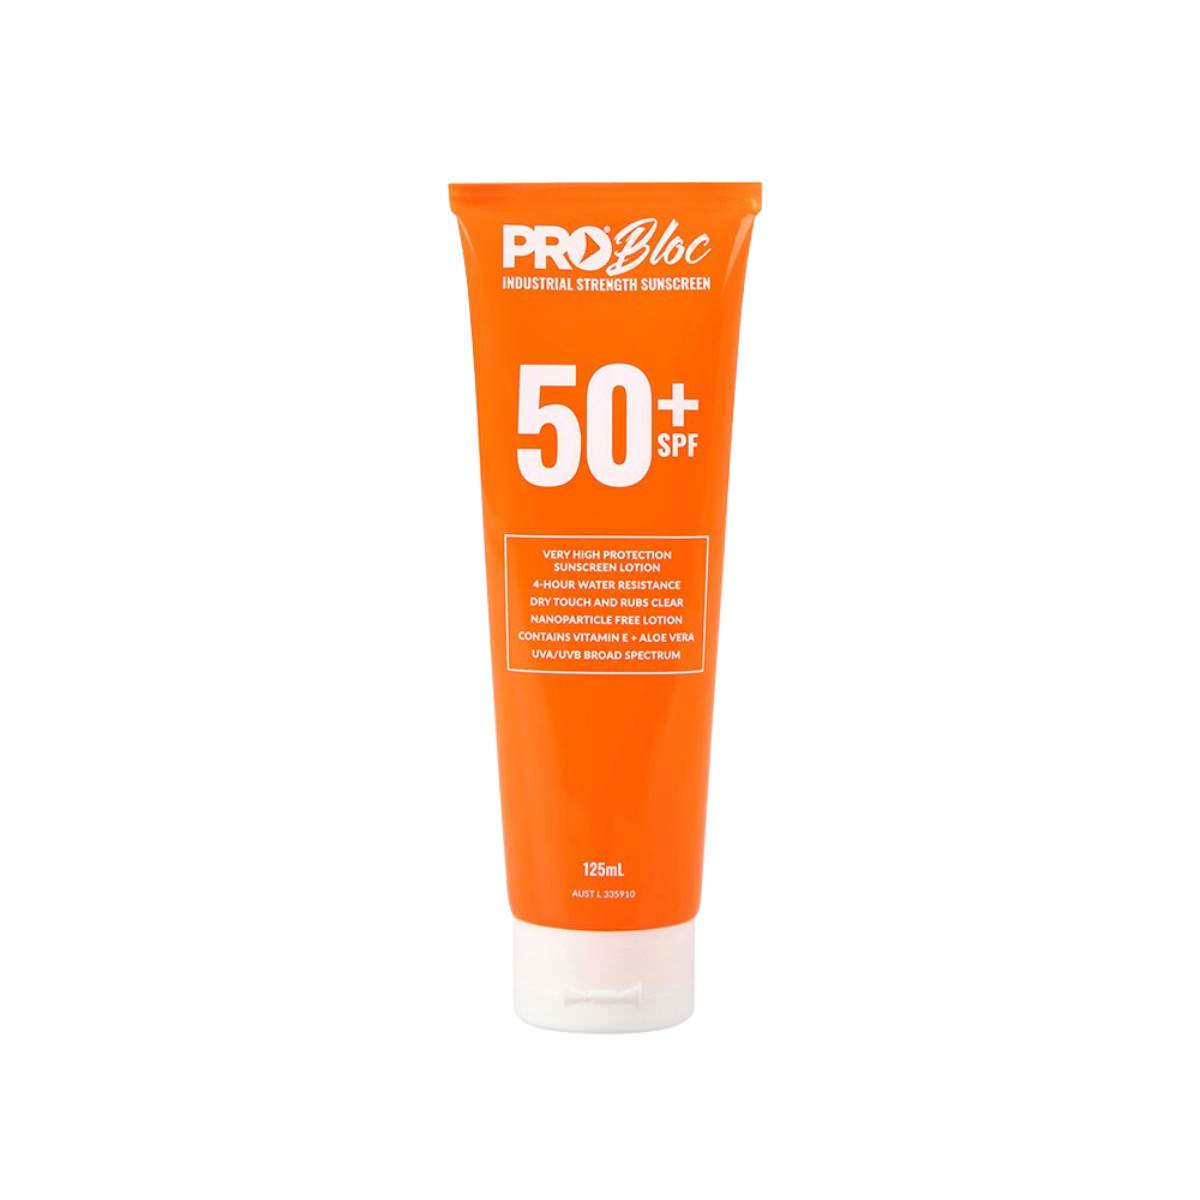 PROBLOC SPF 50 + Sunscreen Bottle (Bottle)